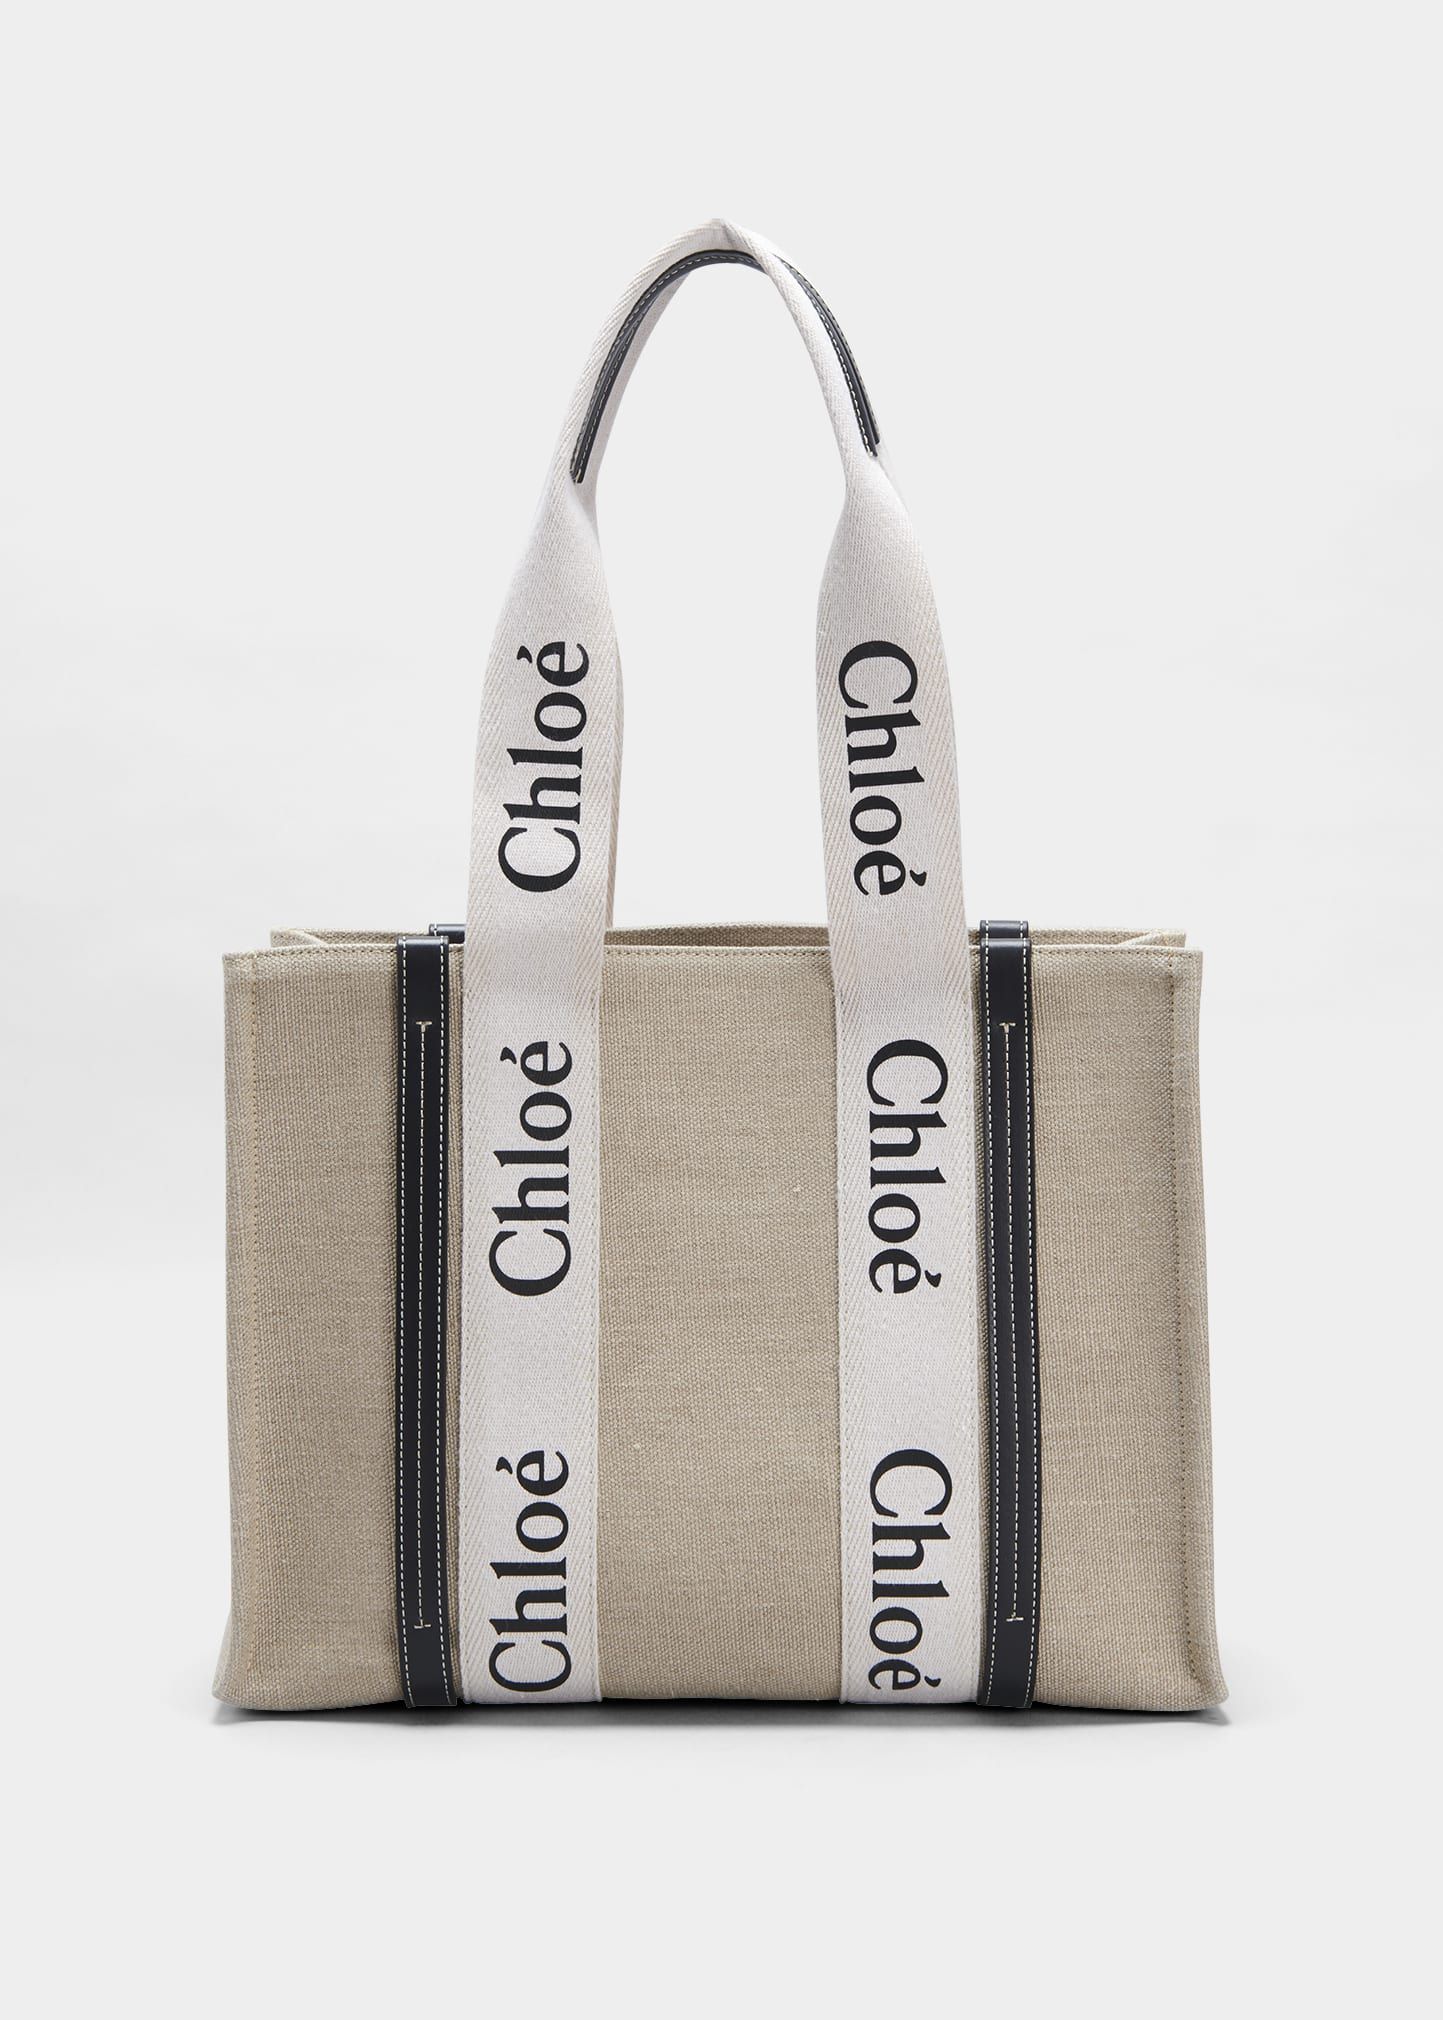 Chloe Woody Medium Tote Bag in Linen | Bergdorf Goodman